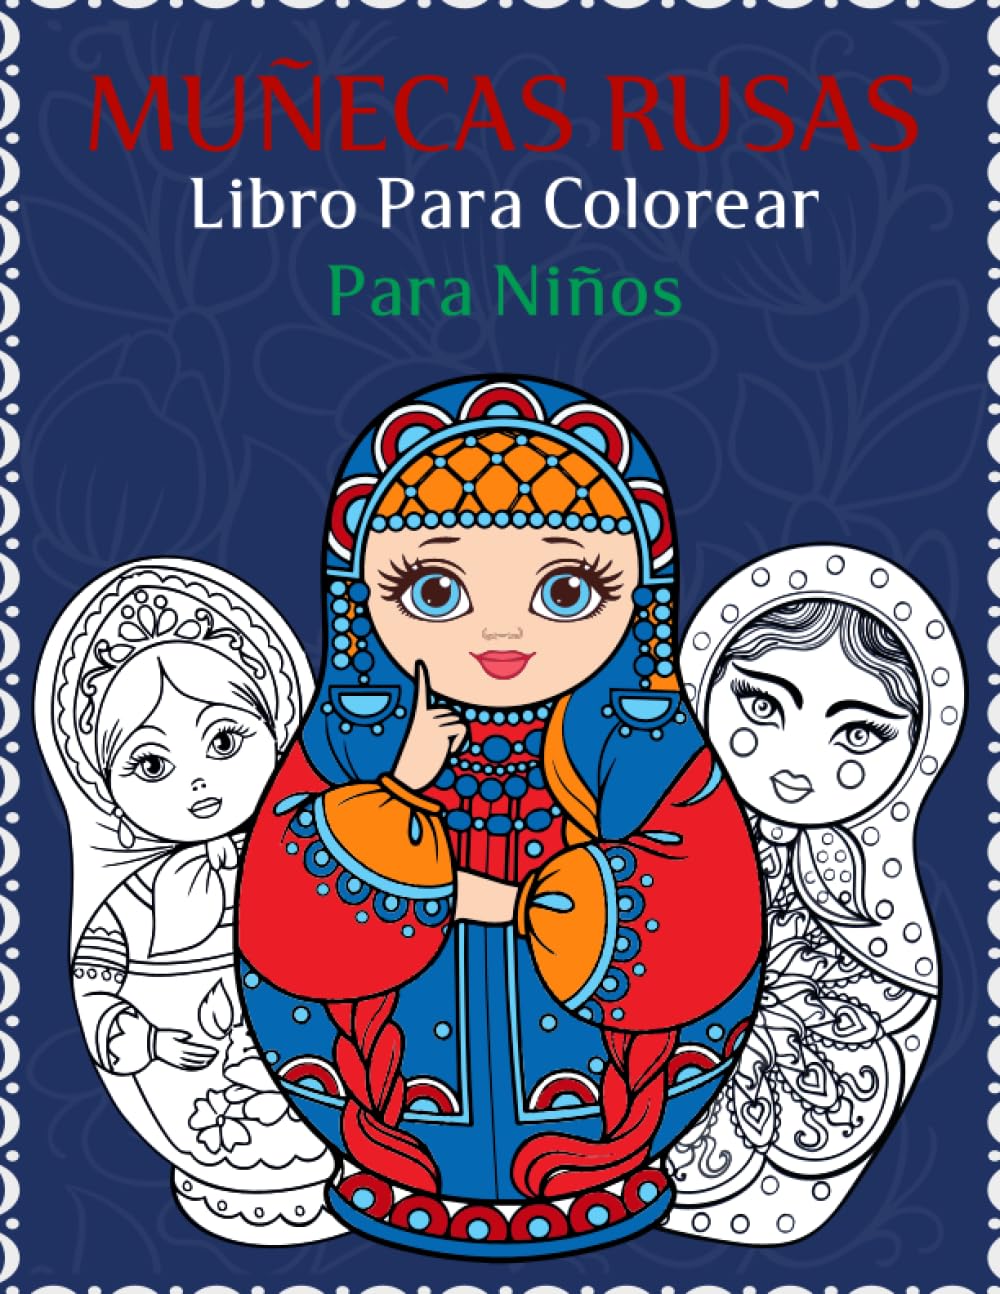 Libro: Colorea Muñecas Rusas para niños por Marta Editorial Libros